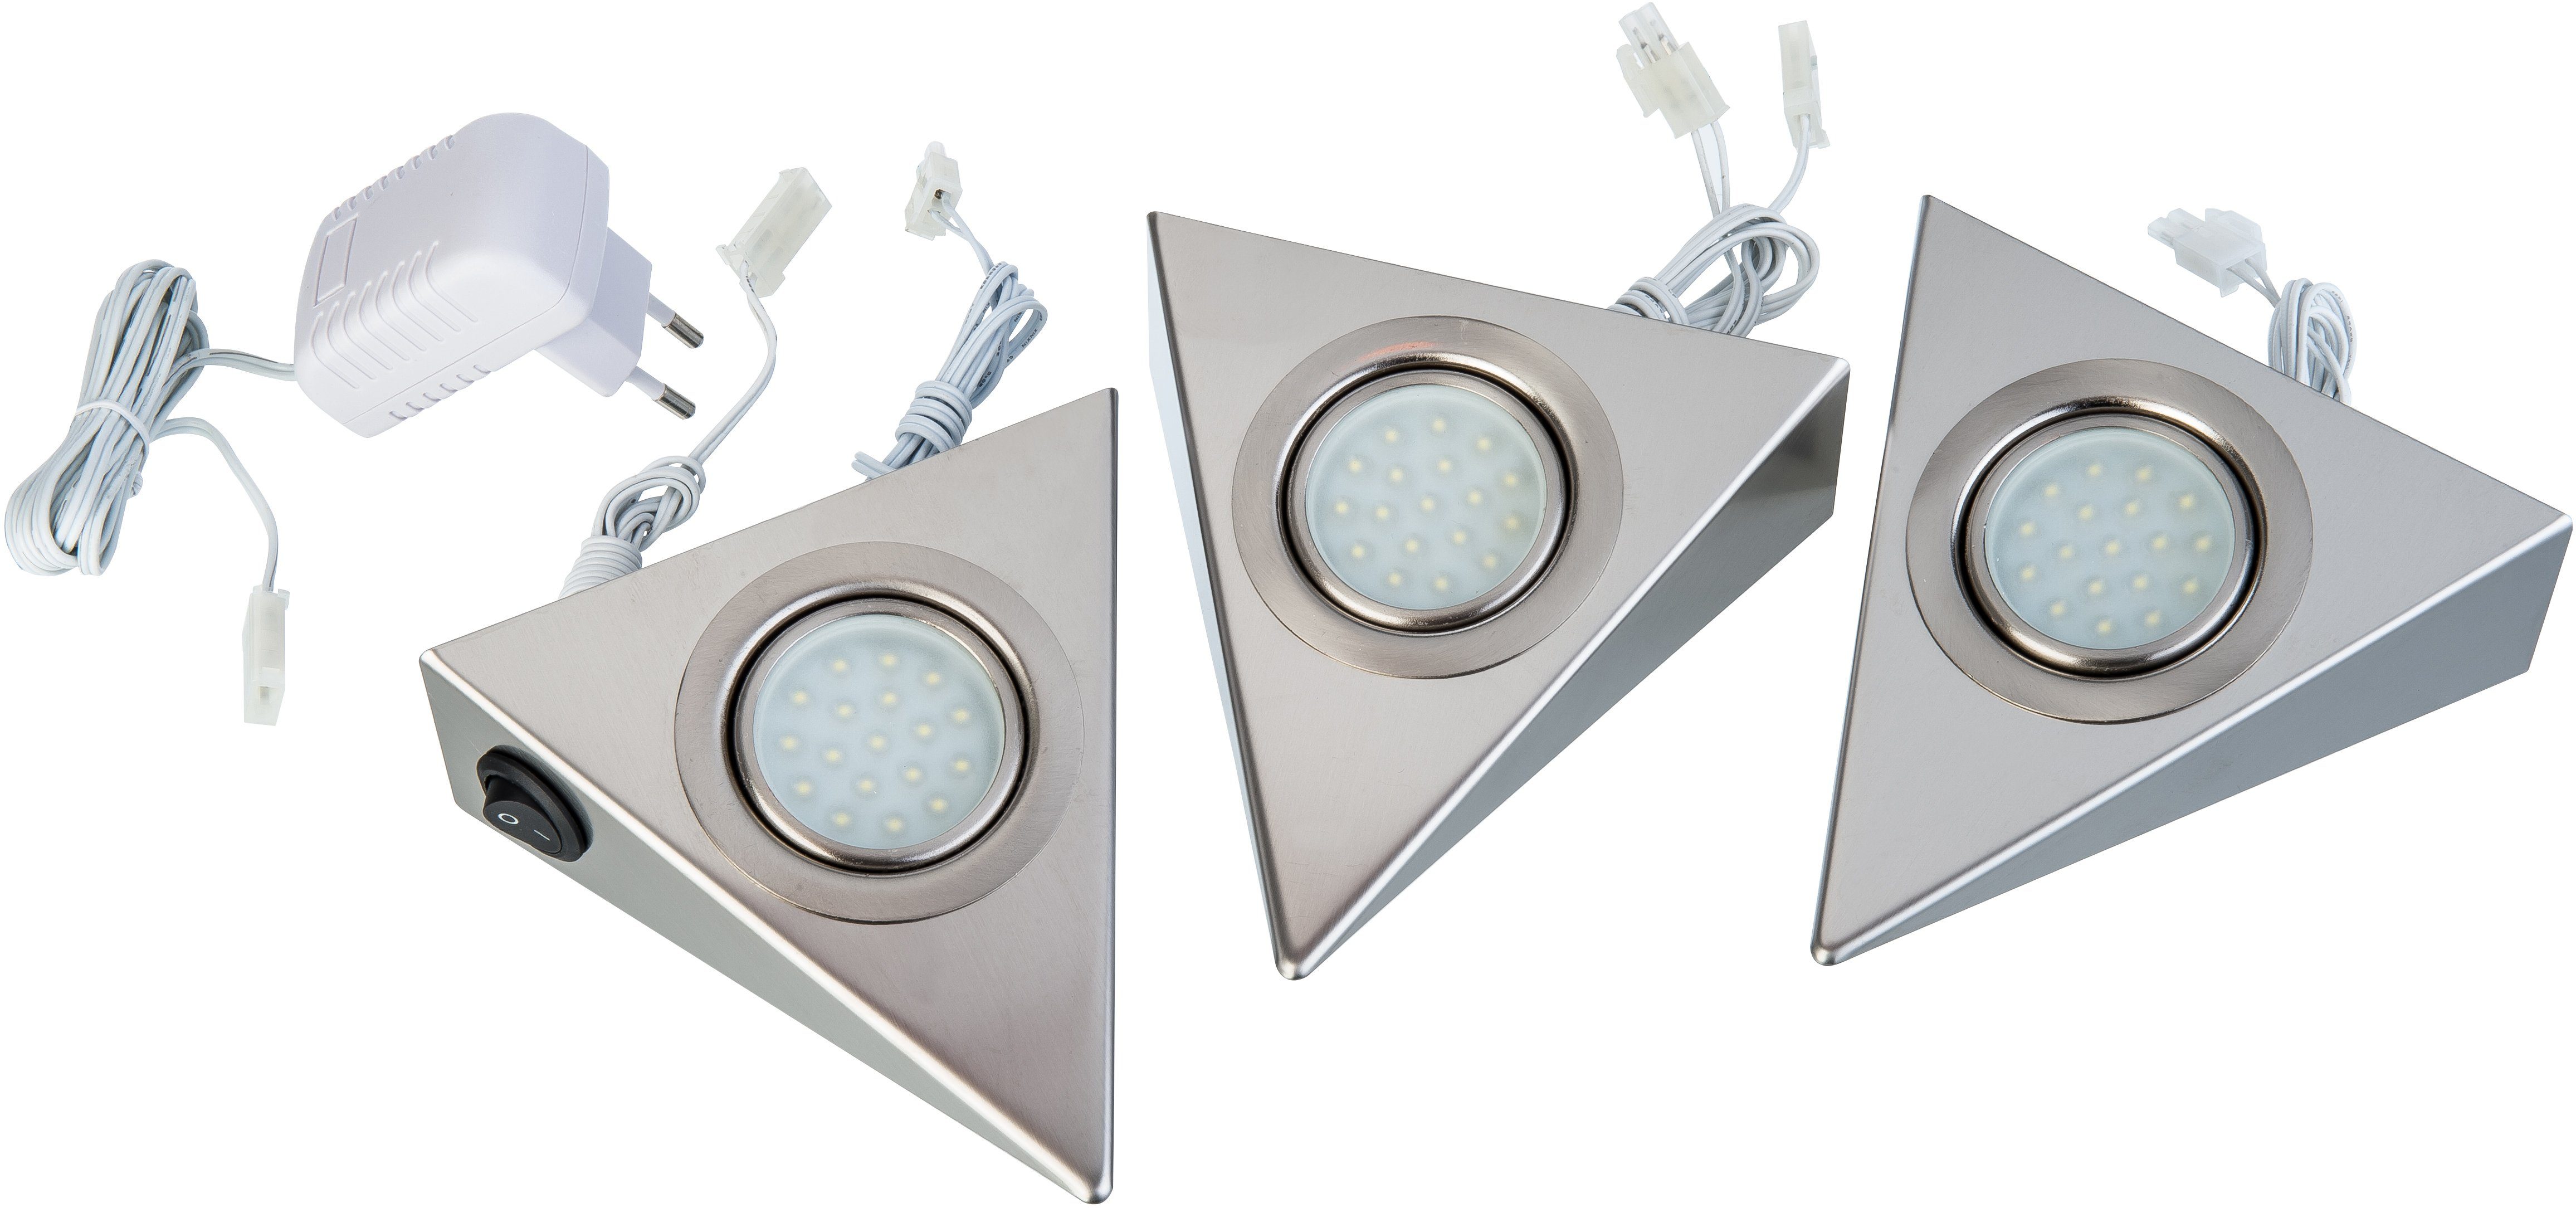 Nino Leuchten LED Unterbauleuchte »DREIECK« kaufen | OTTO